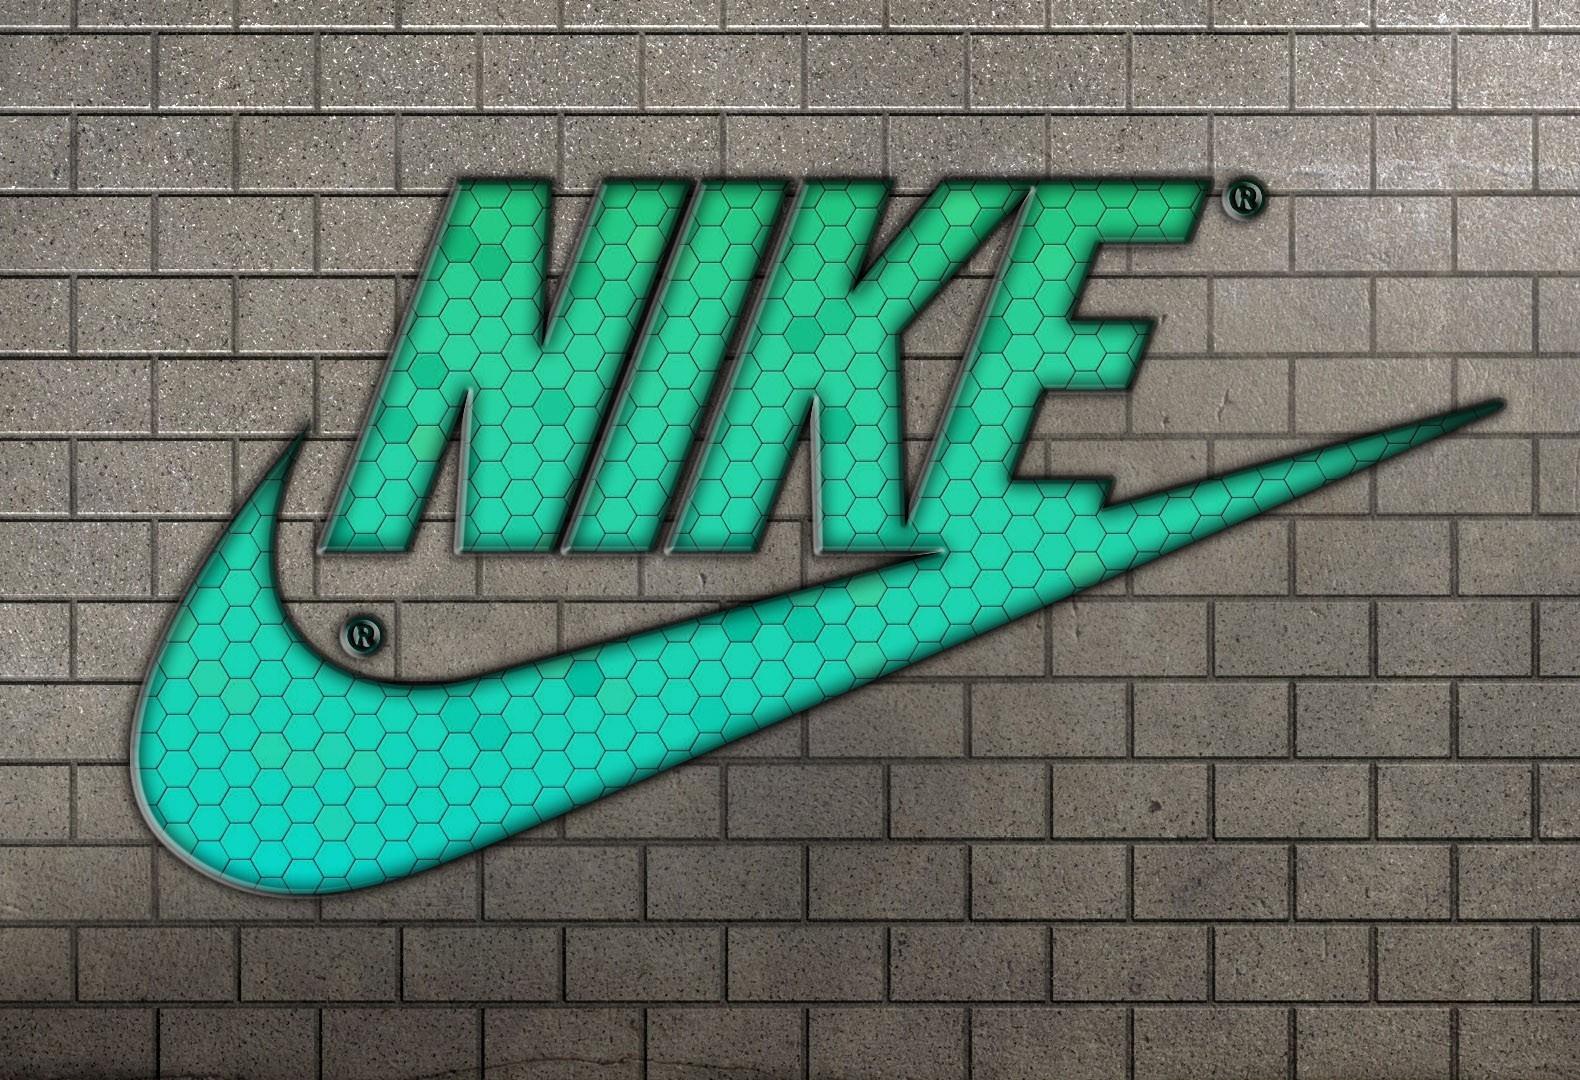 Nike wallpaper. PC